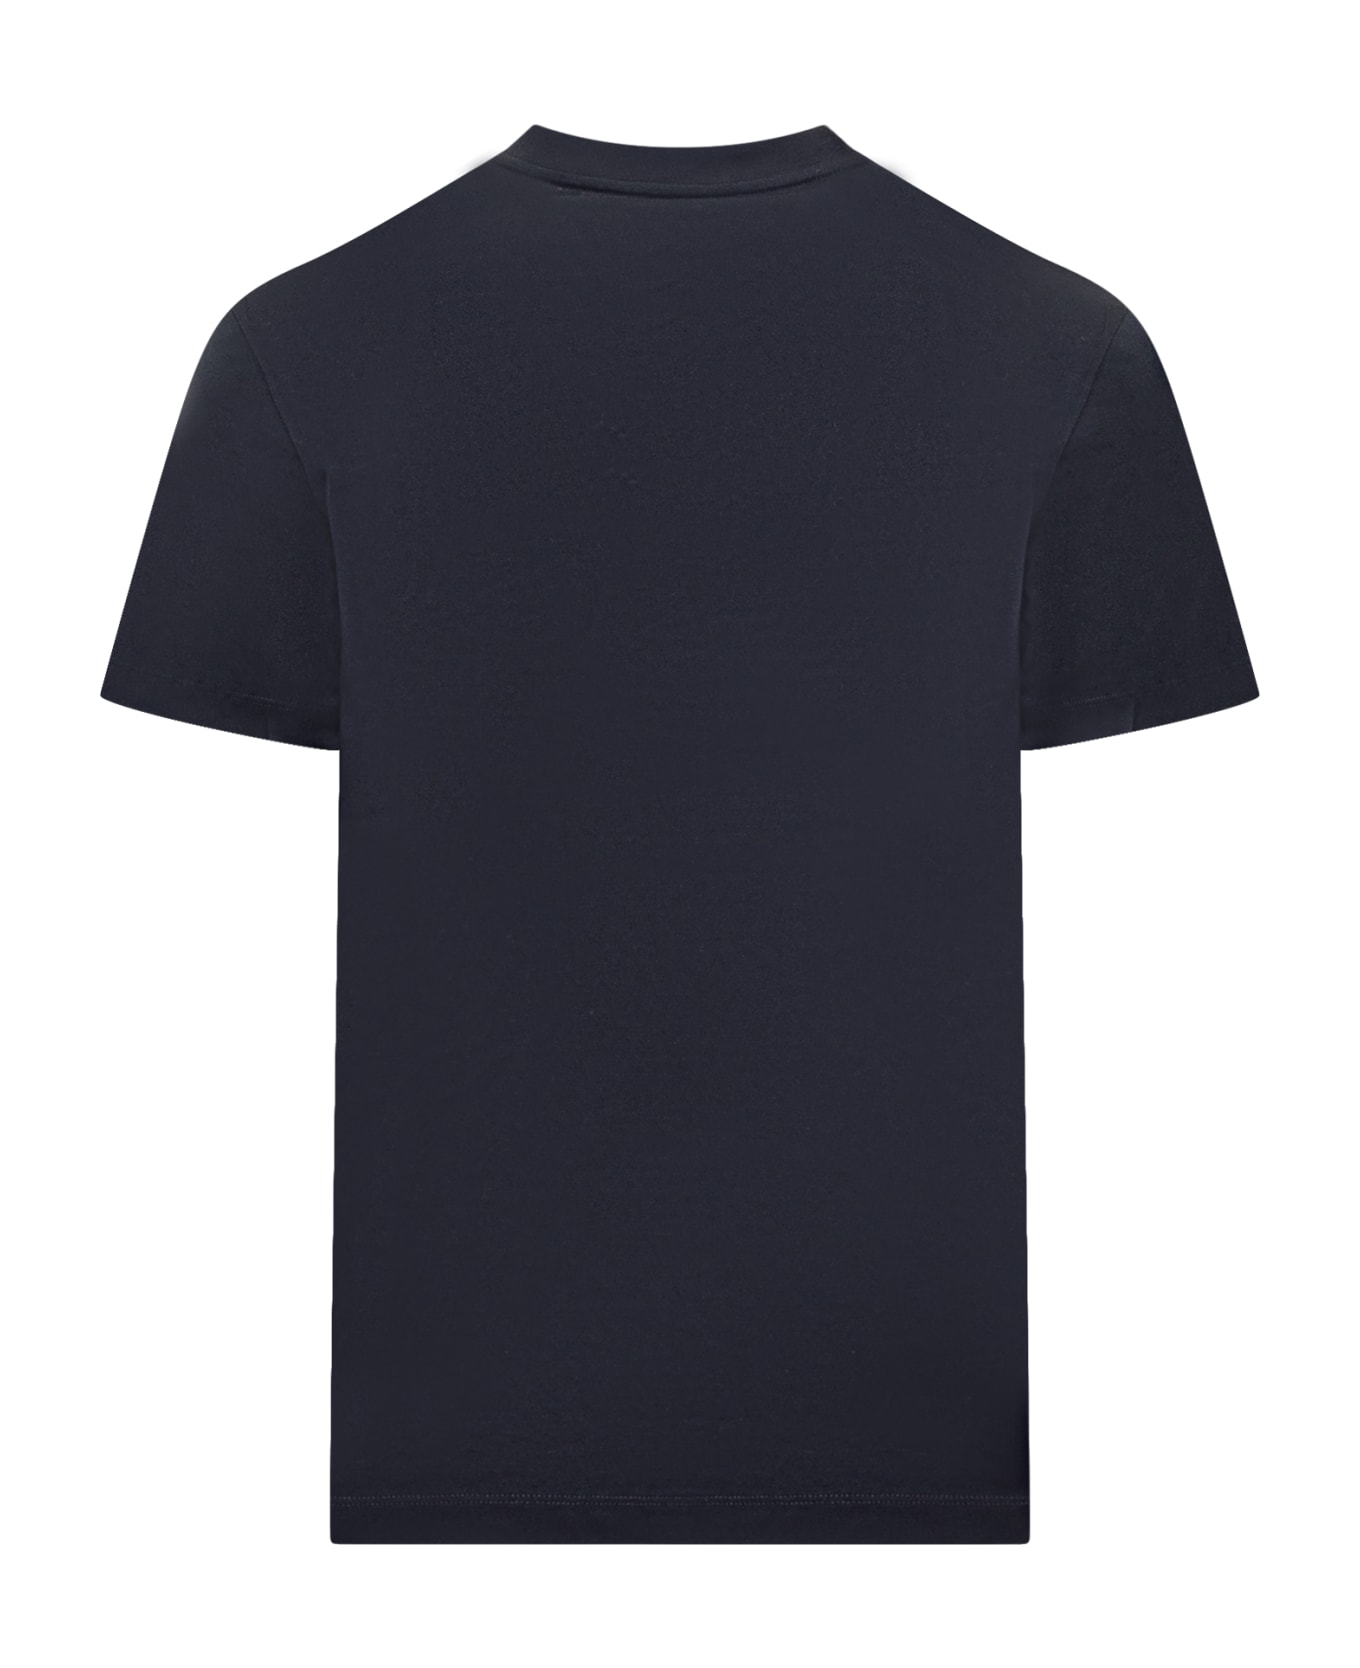 Versace T-shirt - NAVY BLUE